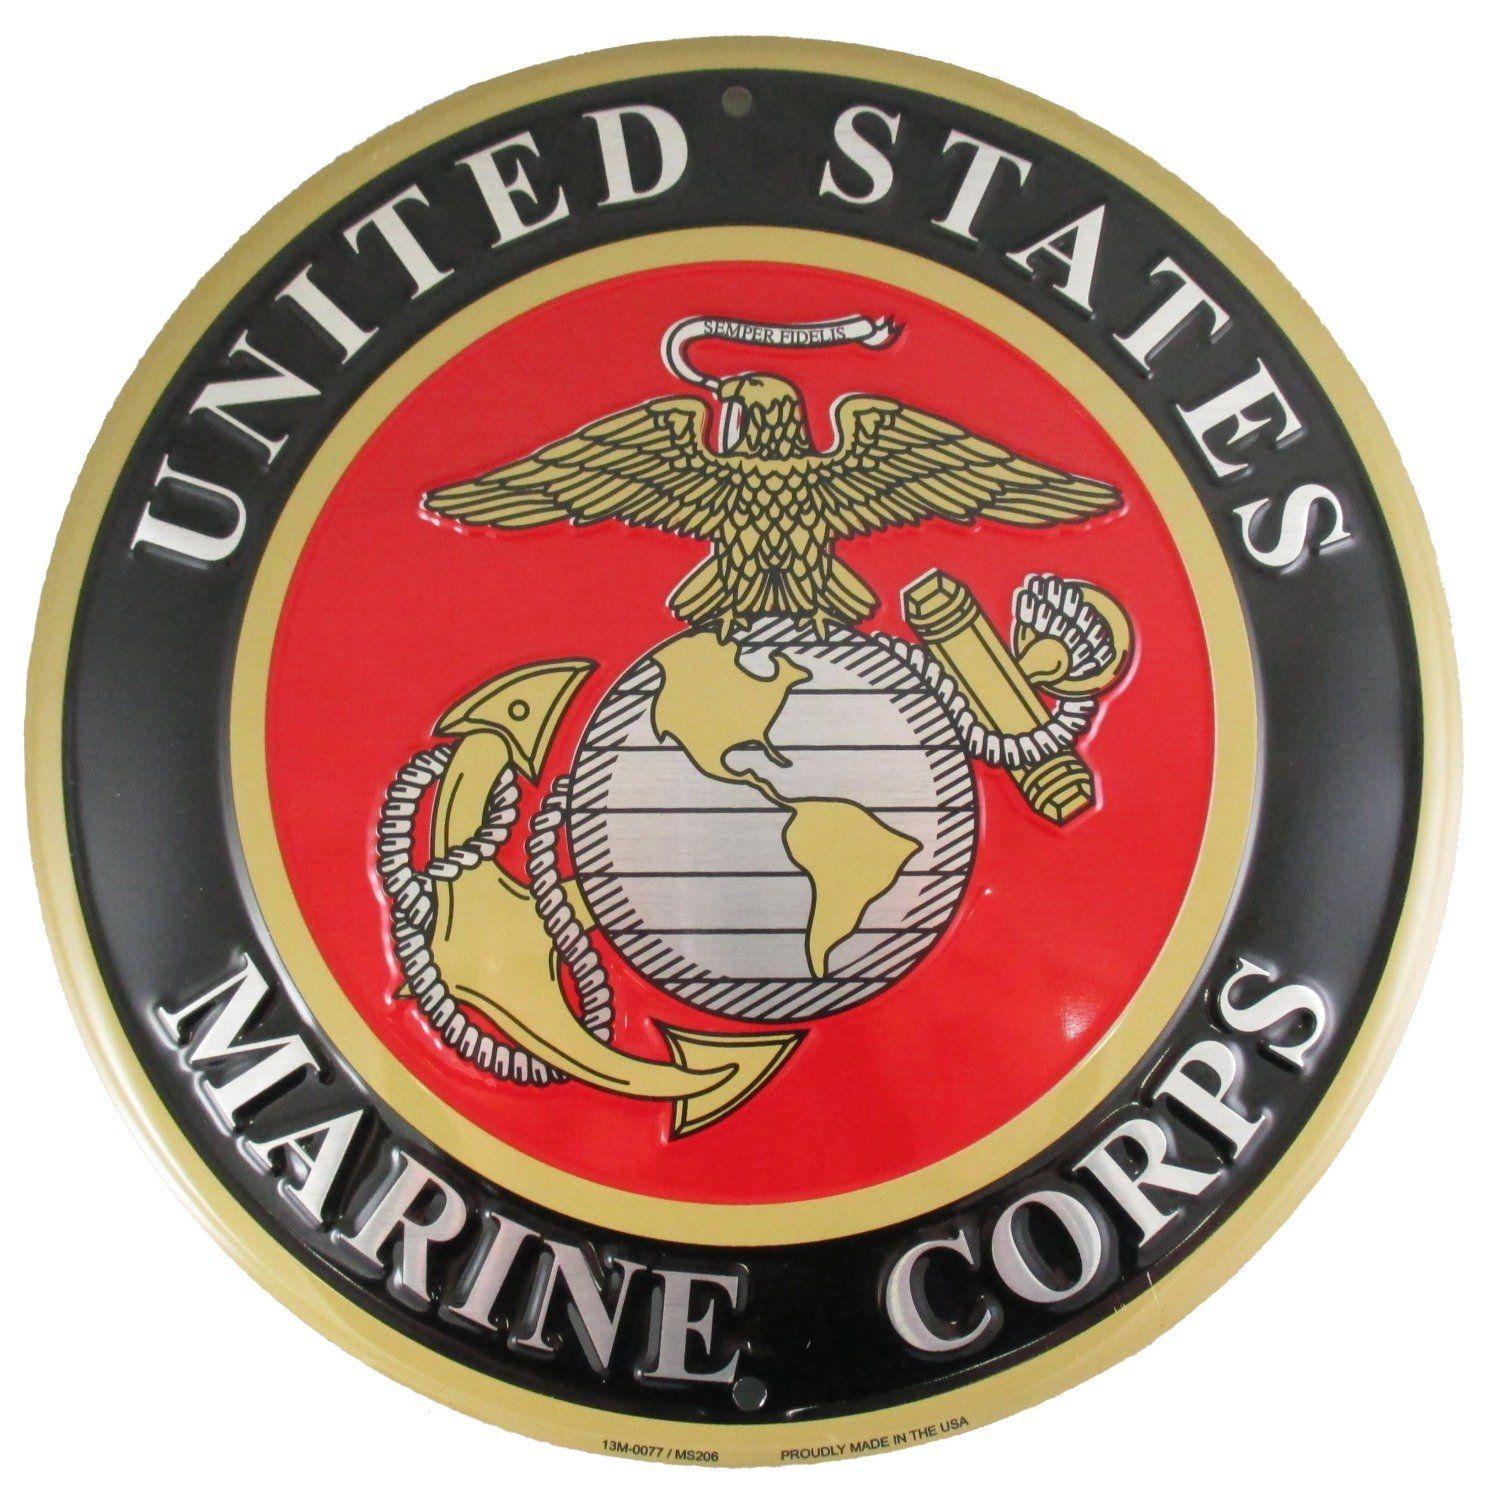 United States Marines Logo - Amazon.com: United States Marines Emblem Metal Sign - US Marine ...